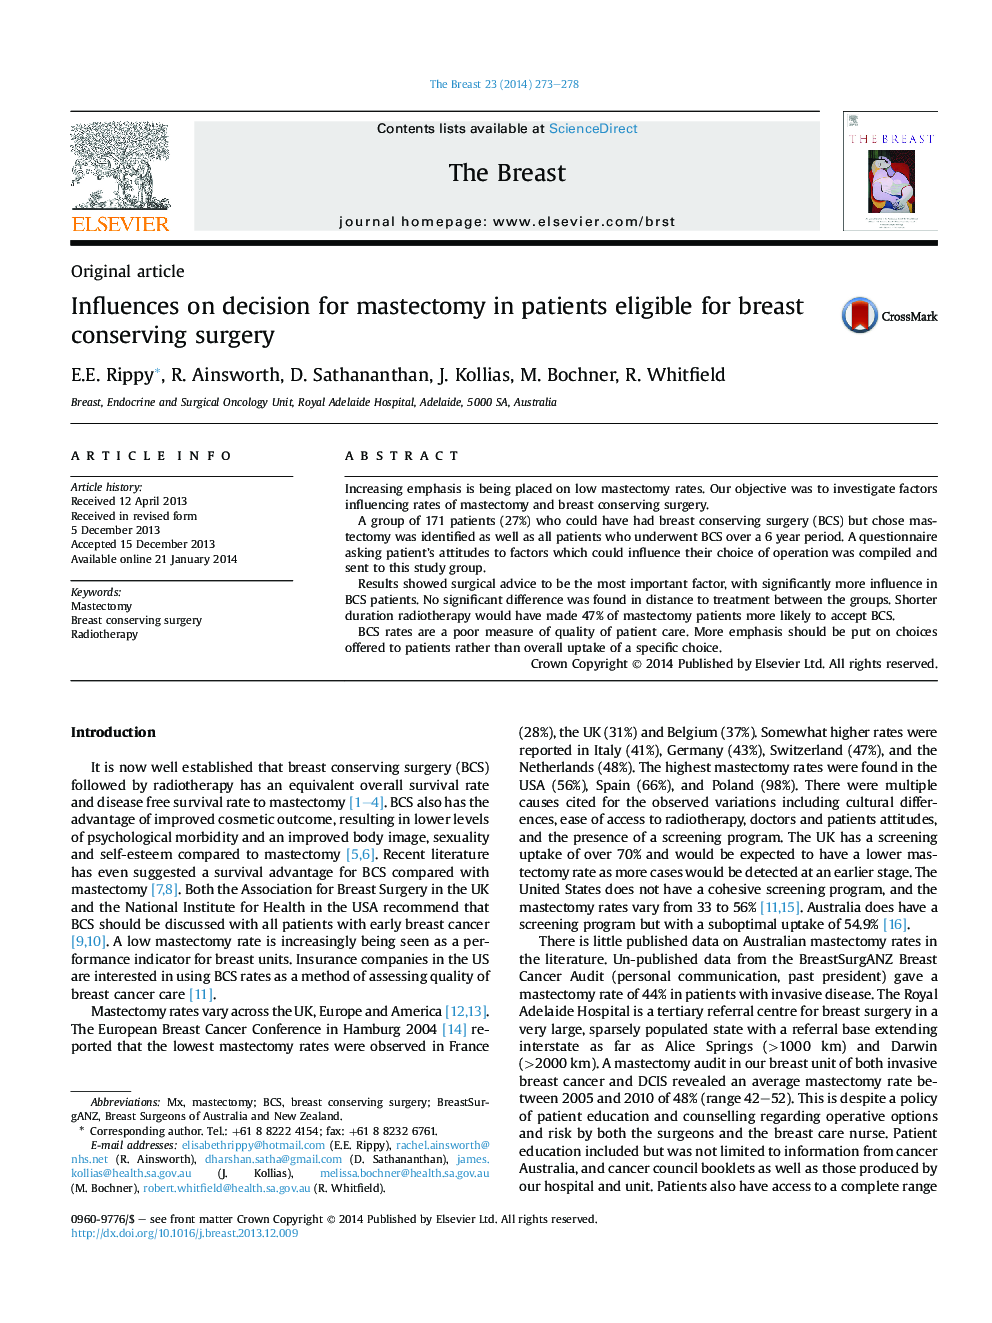 مقاله اصلی در مورد تصمیم گیری برای ماستکتومی در بیماران واجد شرایط برای جراحی سینه محافظت 